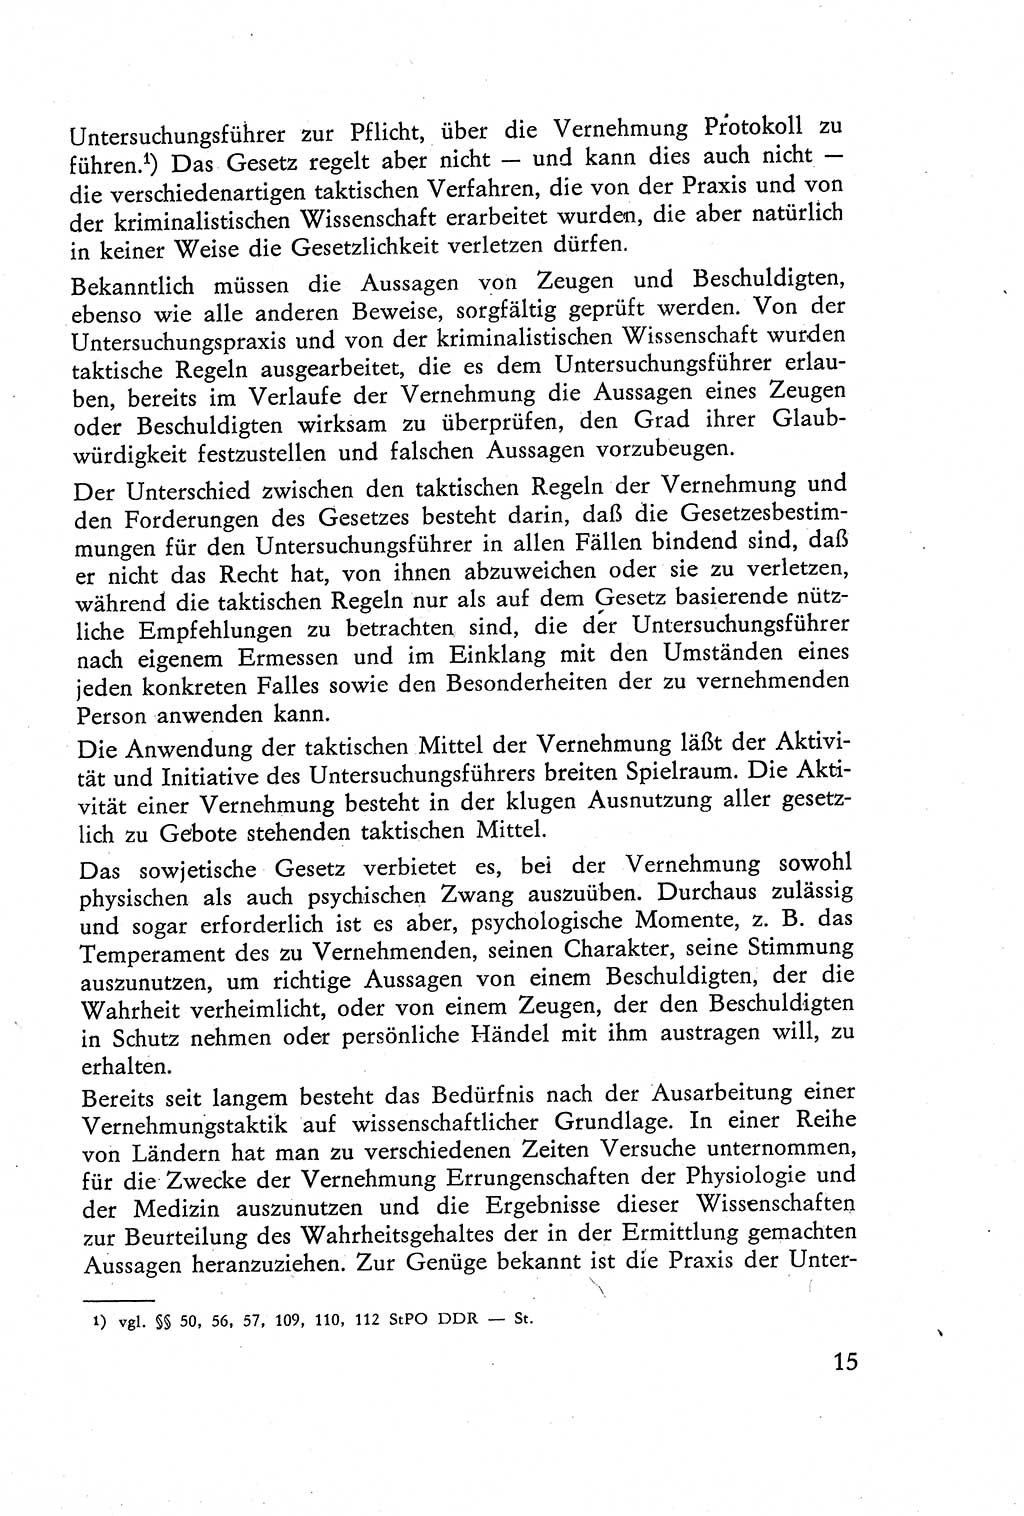 Die Vernehmung [Deutsche Demokratische Republik (DDR)] 1960, Seite 15 (Vern. DDR 1960, S. 15)